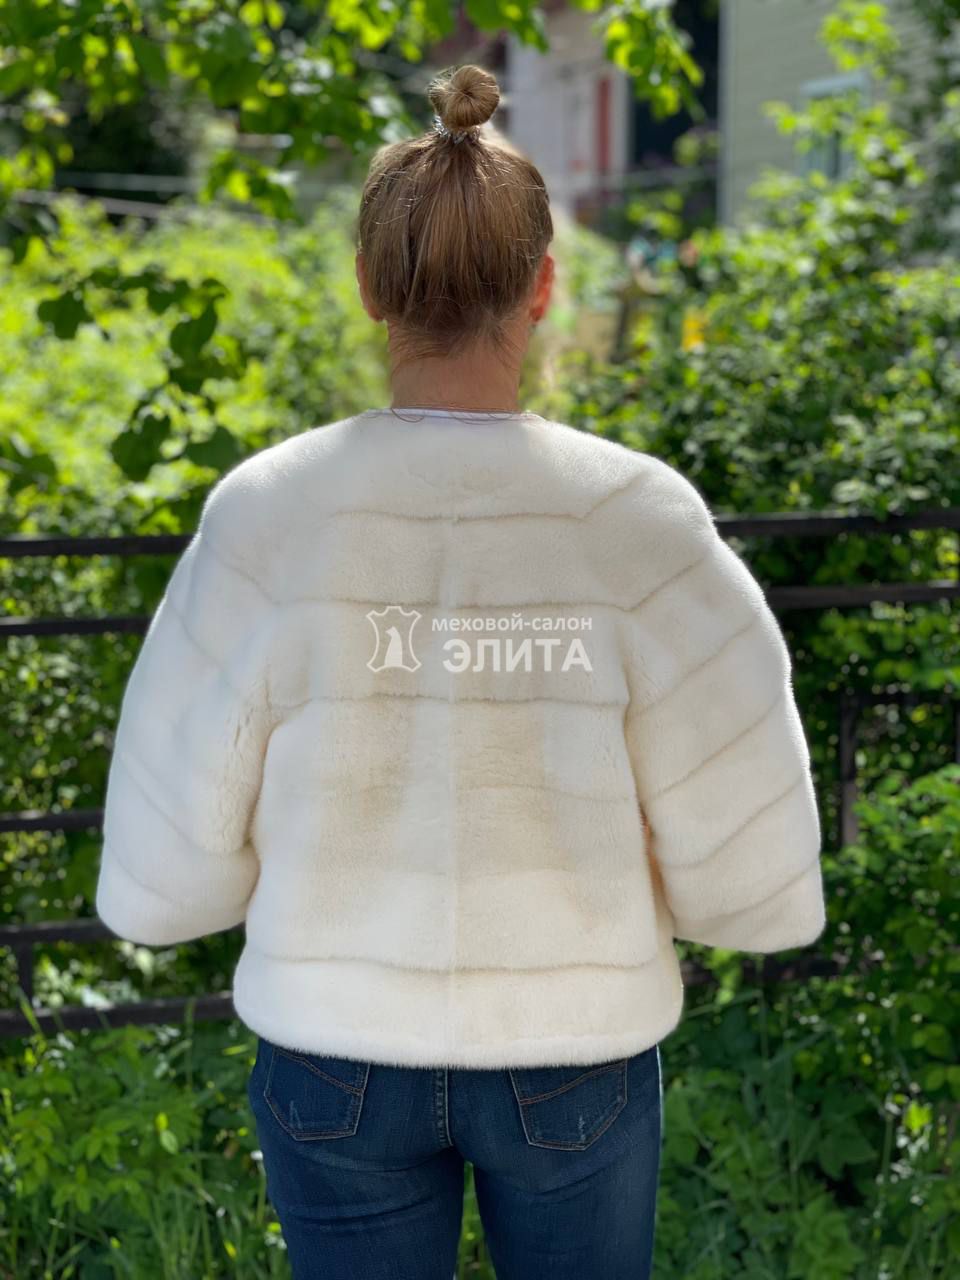 Куртка из норки S-1307, р-р 42-46, цена 65000 рублей в интернет-магазине кожи и меха ЭЛИТА. Вид 2